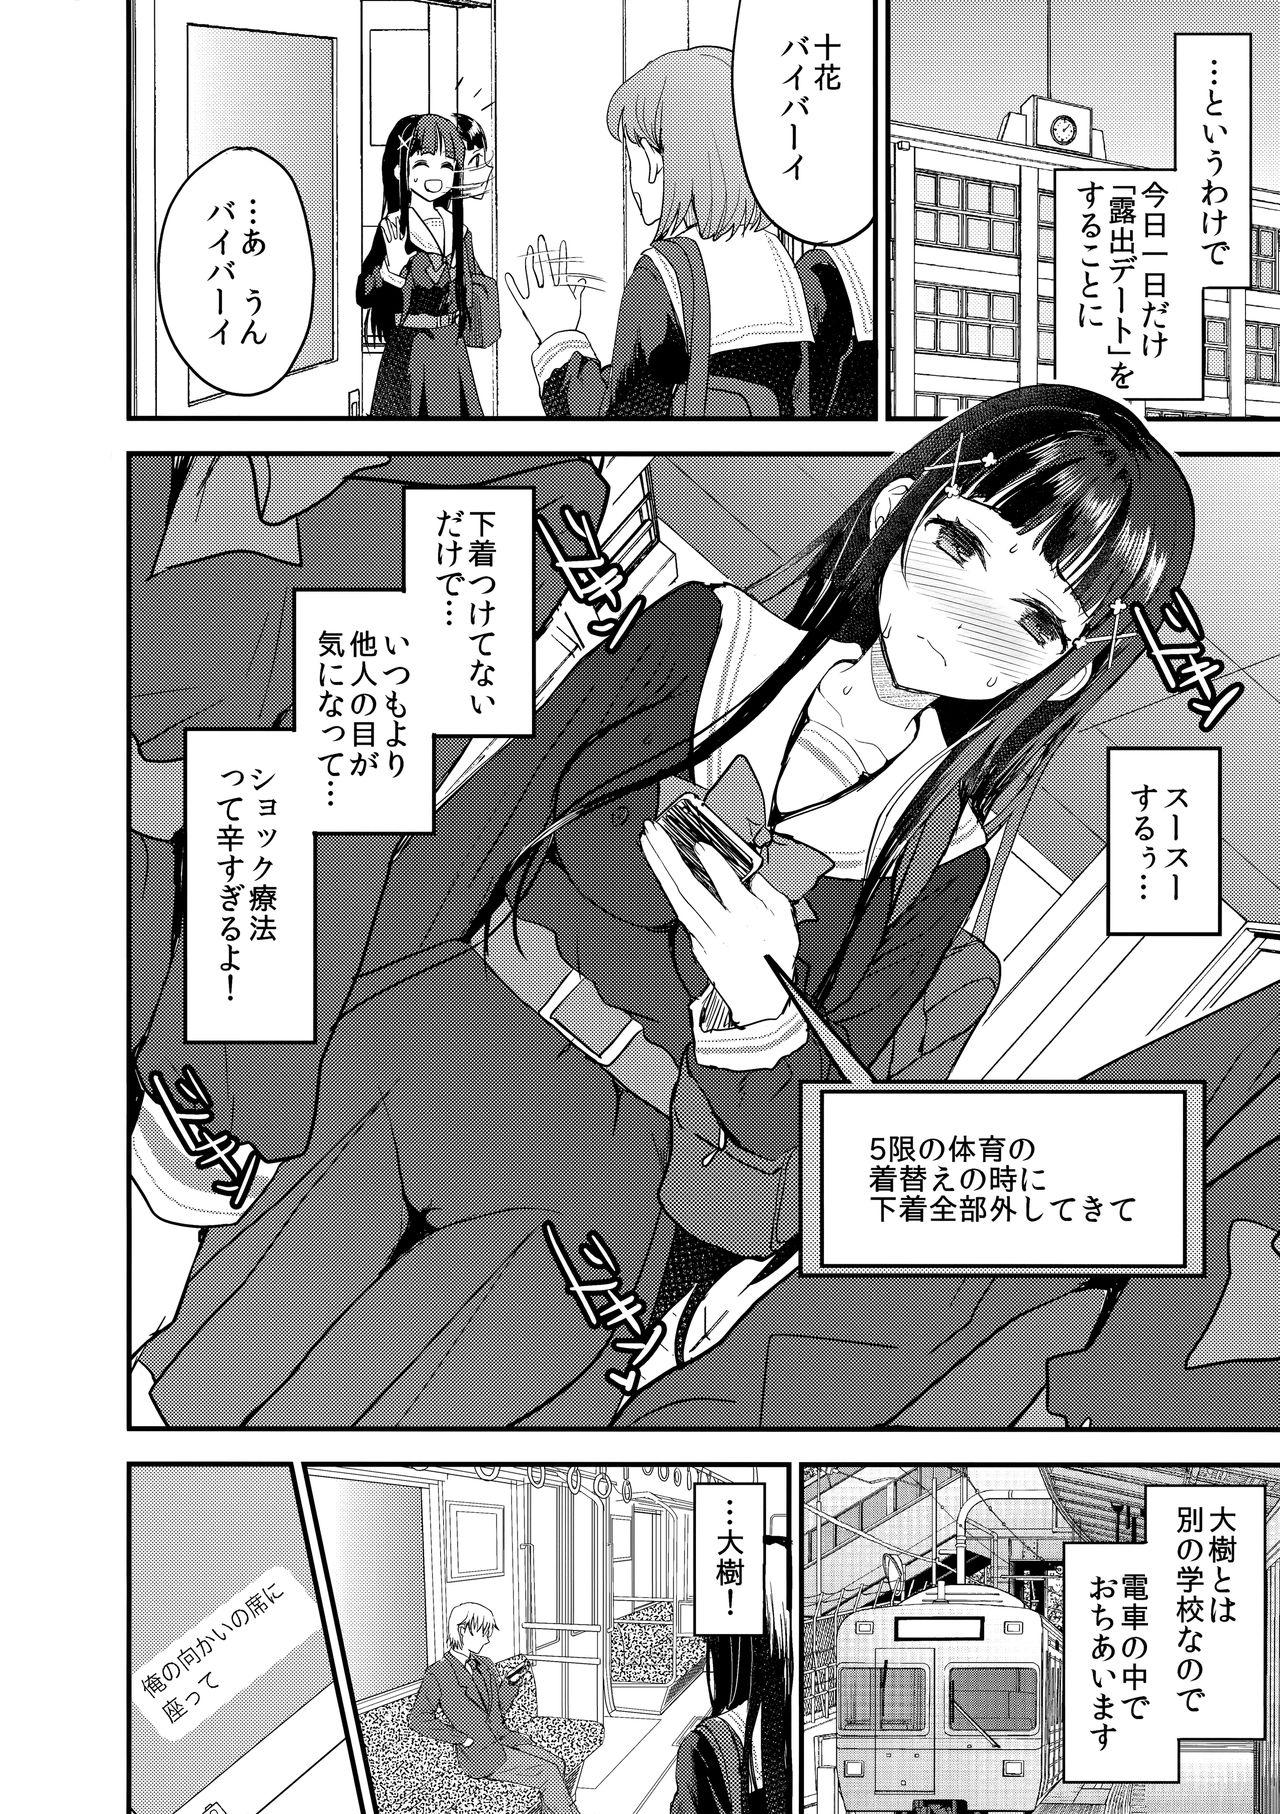 Nut Watashi, Zettai ni Roshutsu Nante Shimasen. Spooning - Page 7